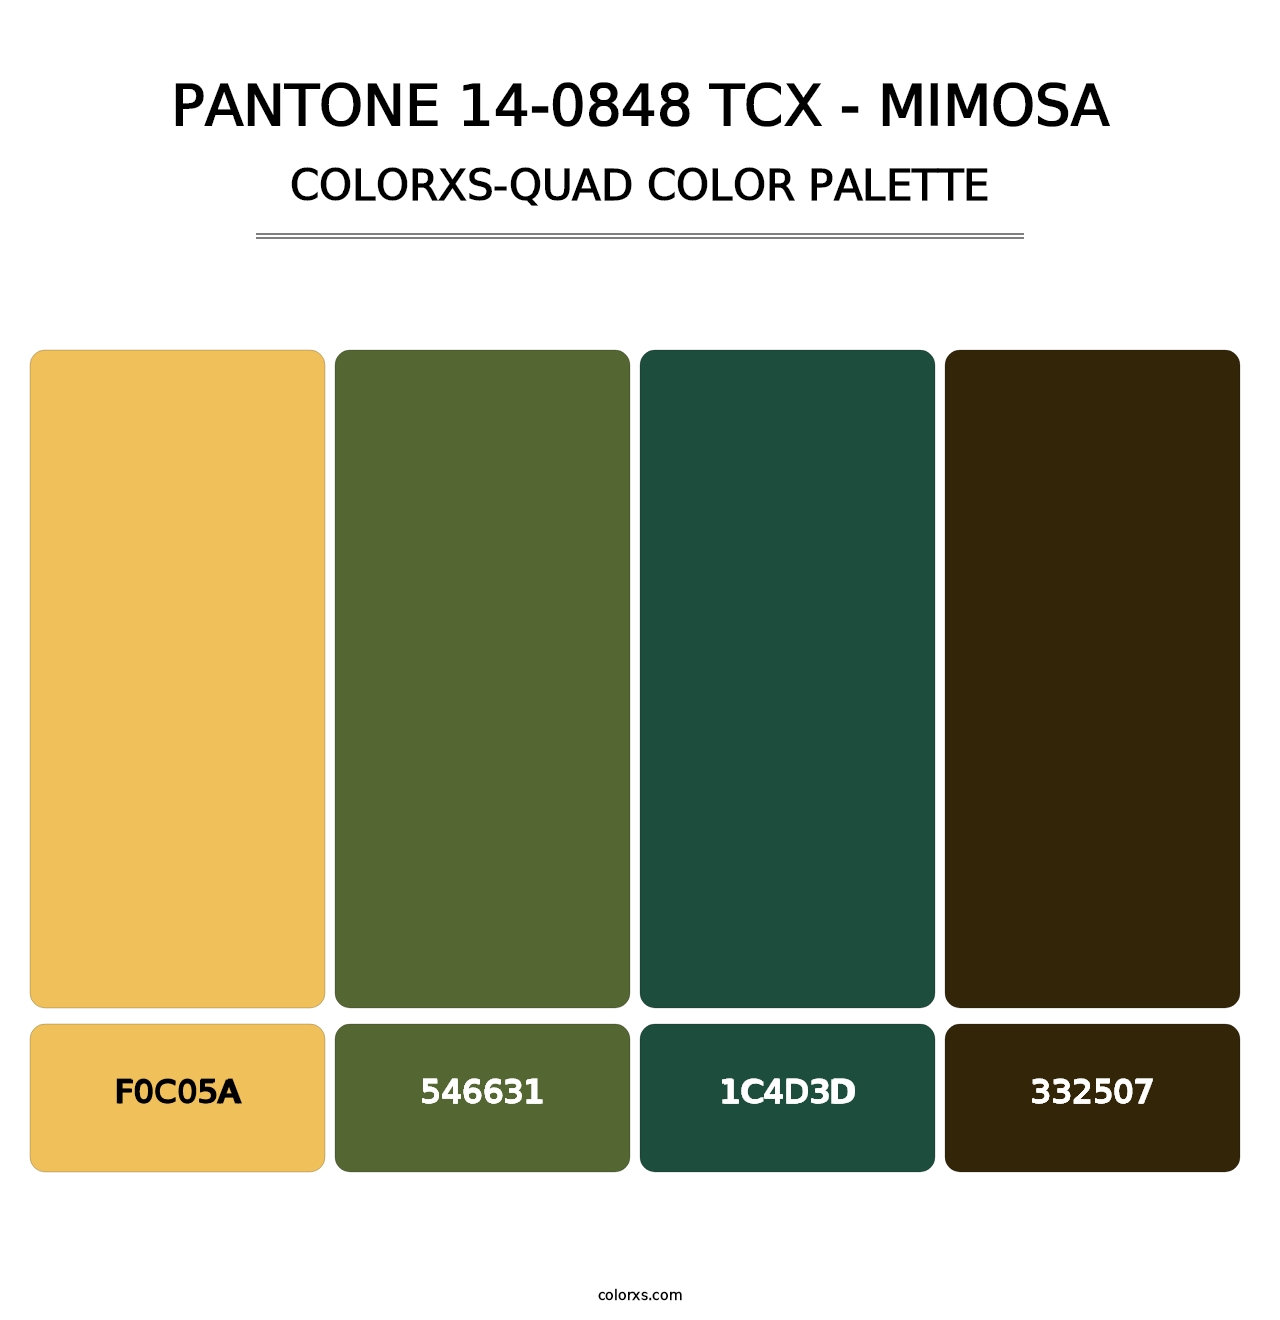 PANTONE 14-0848 TCX - Mimosa - Colorxs Quad Palette